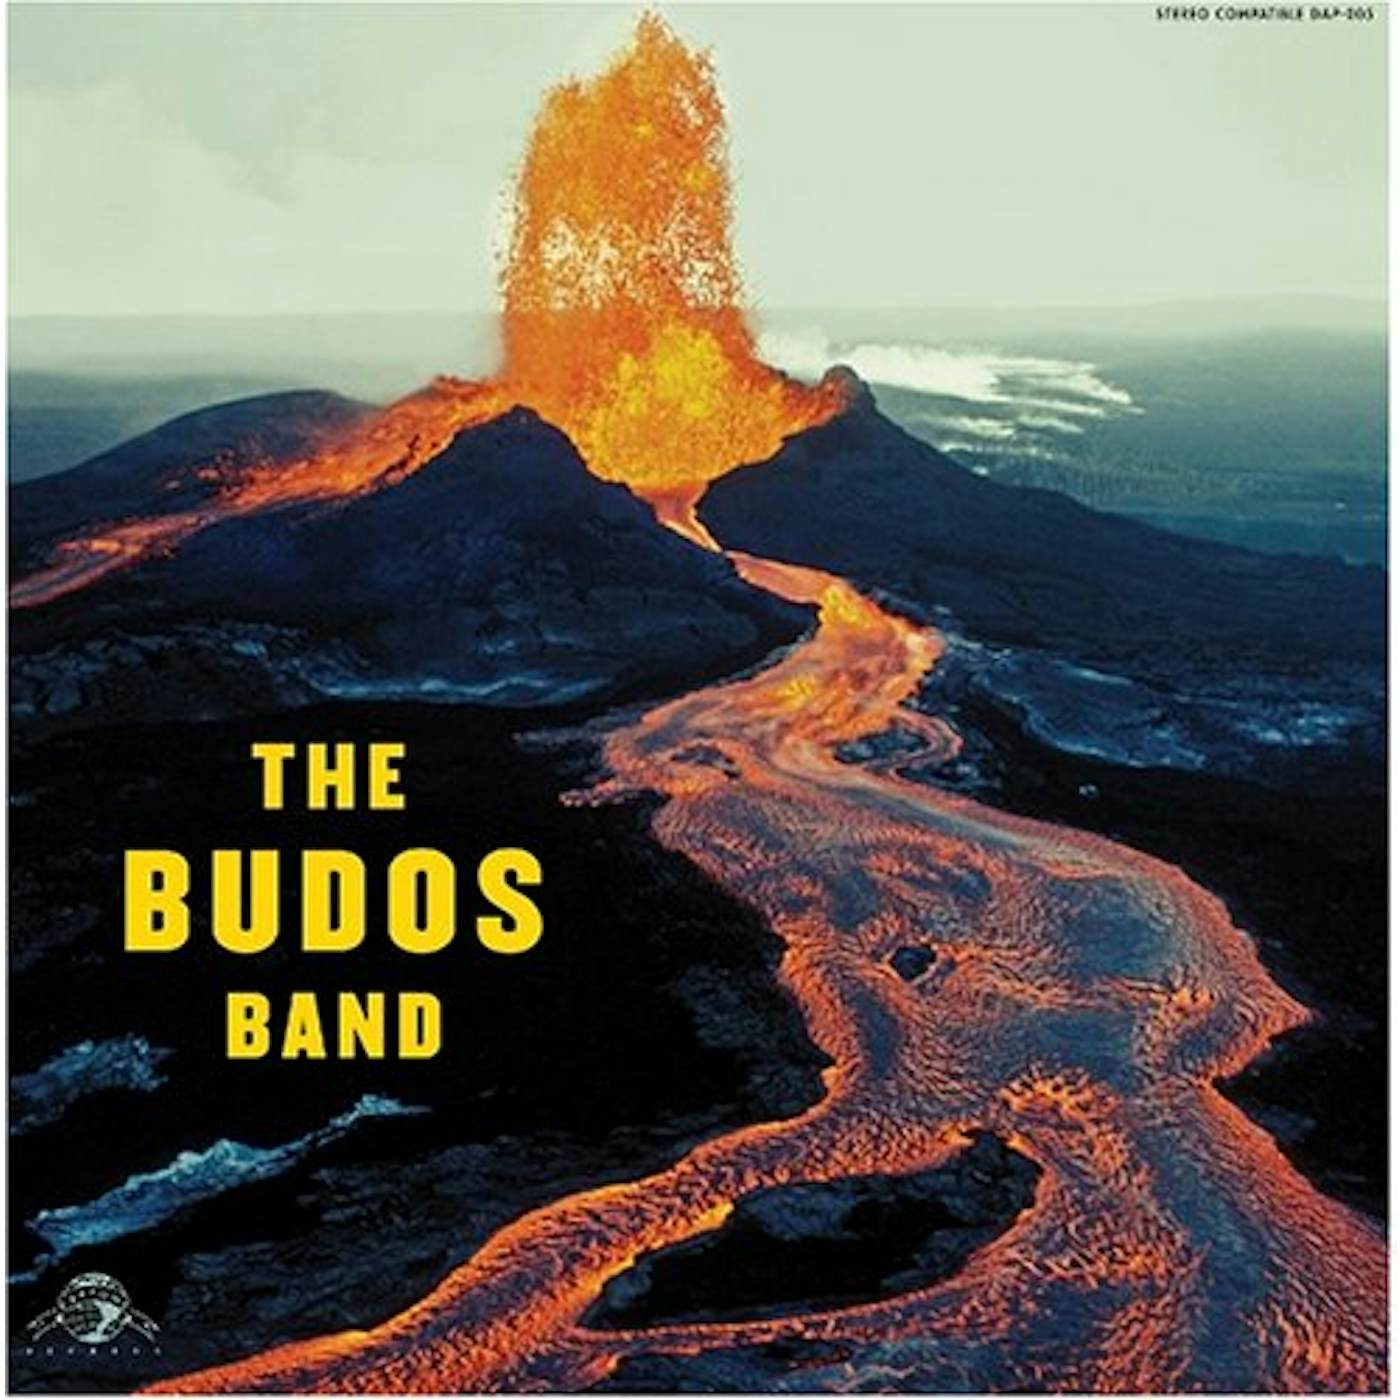 The Budos Band CD